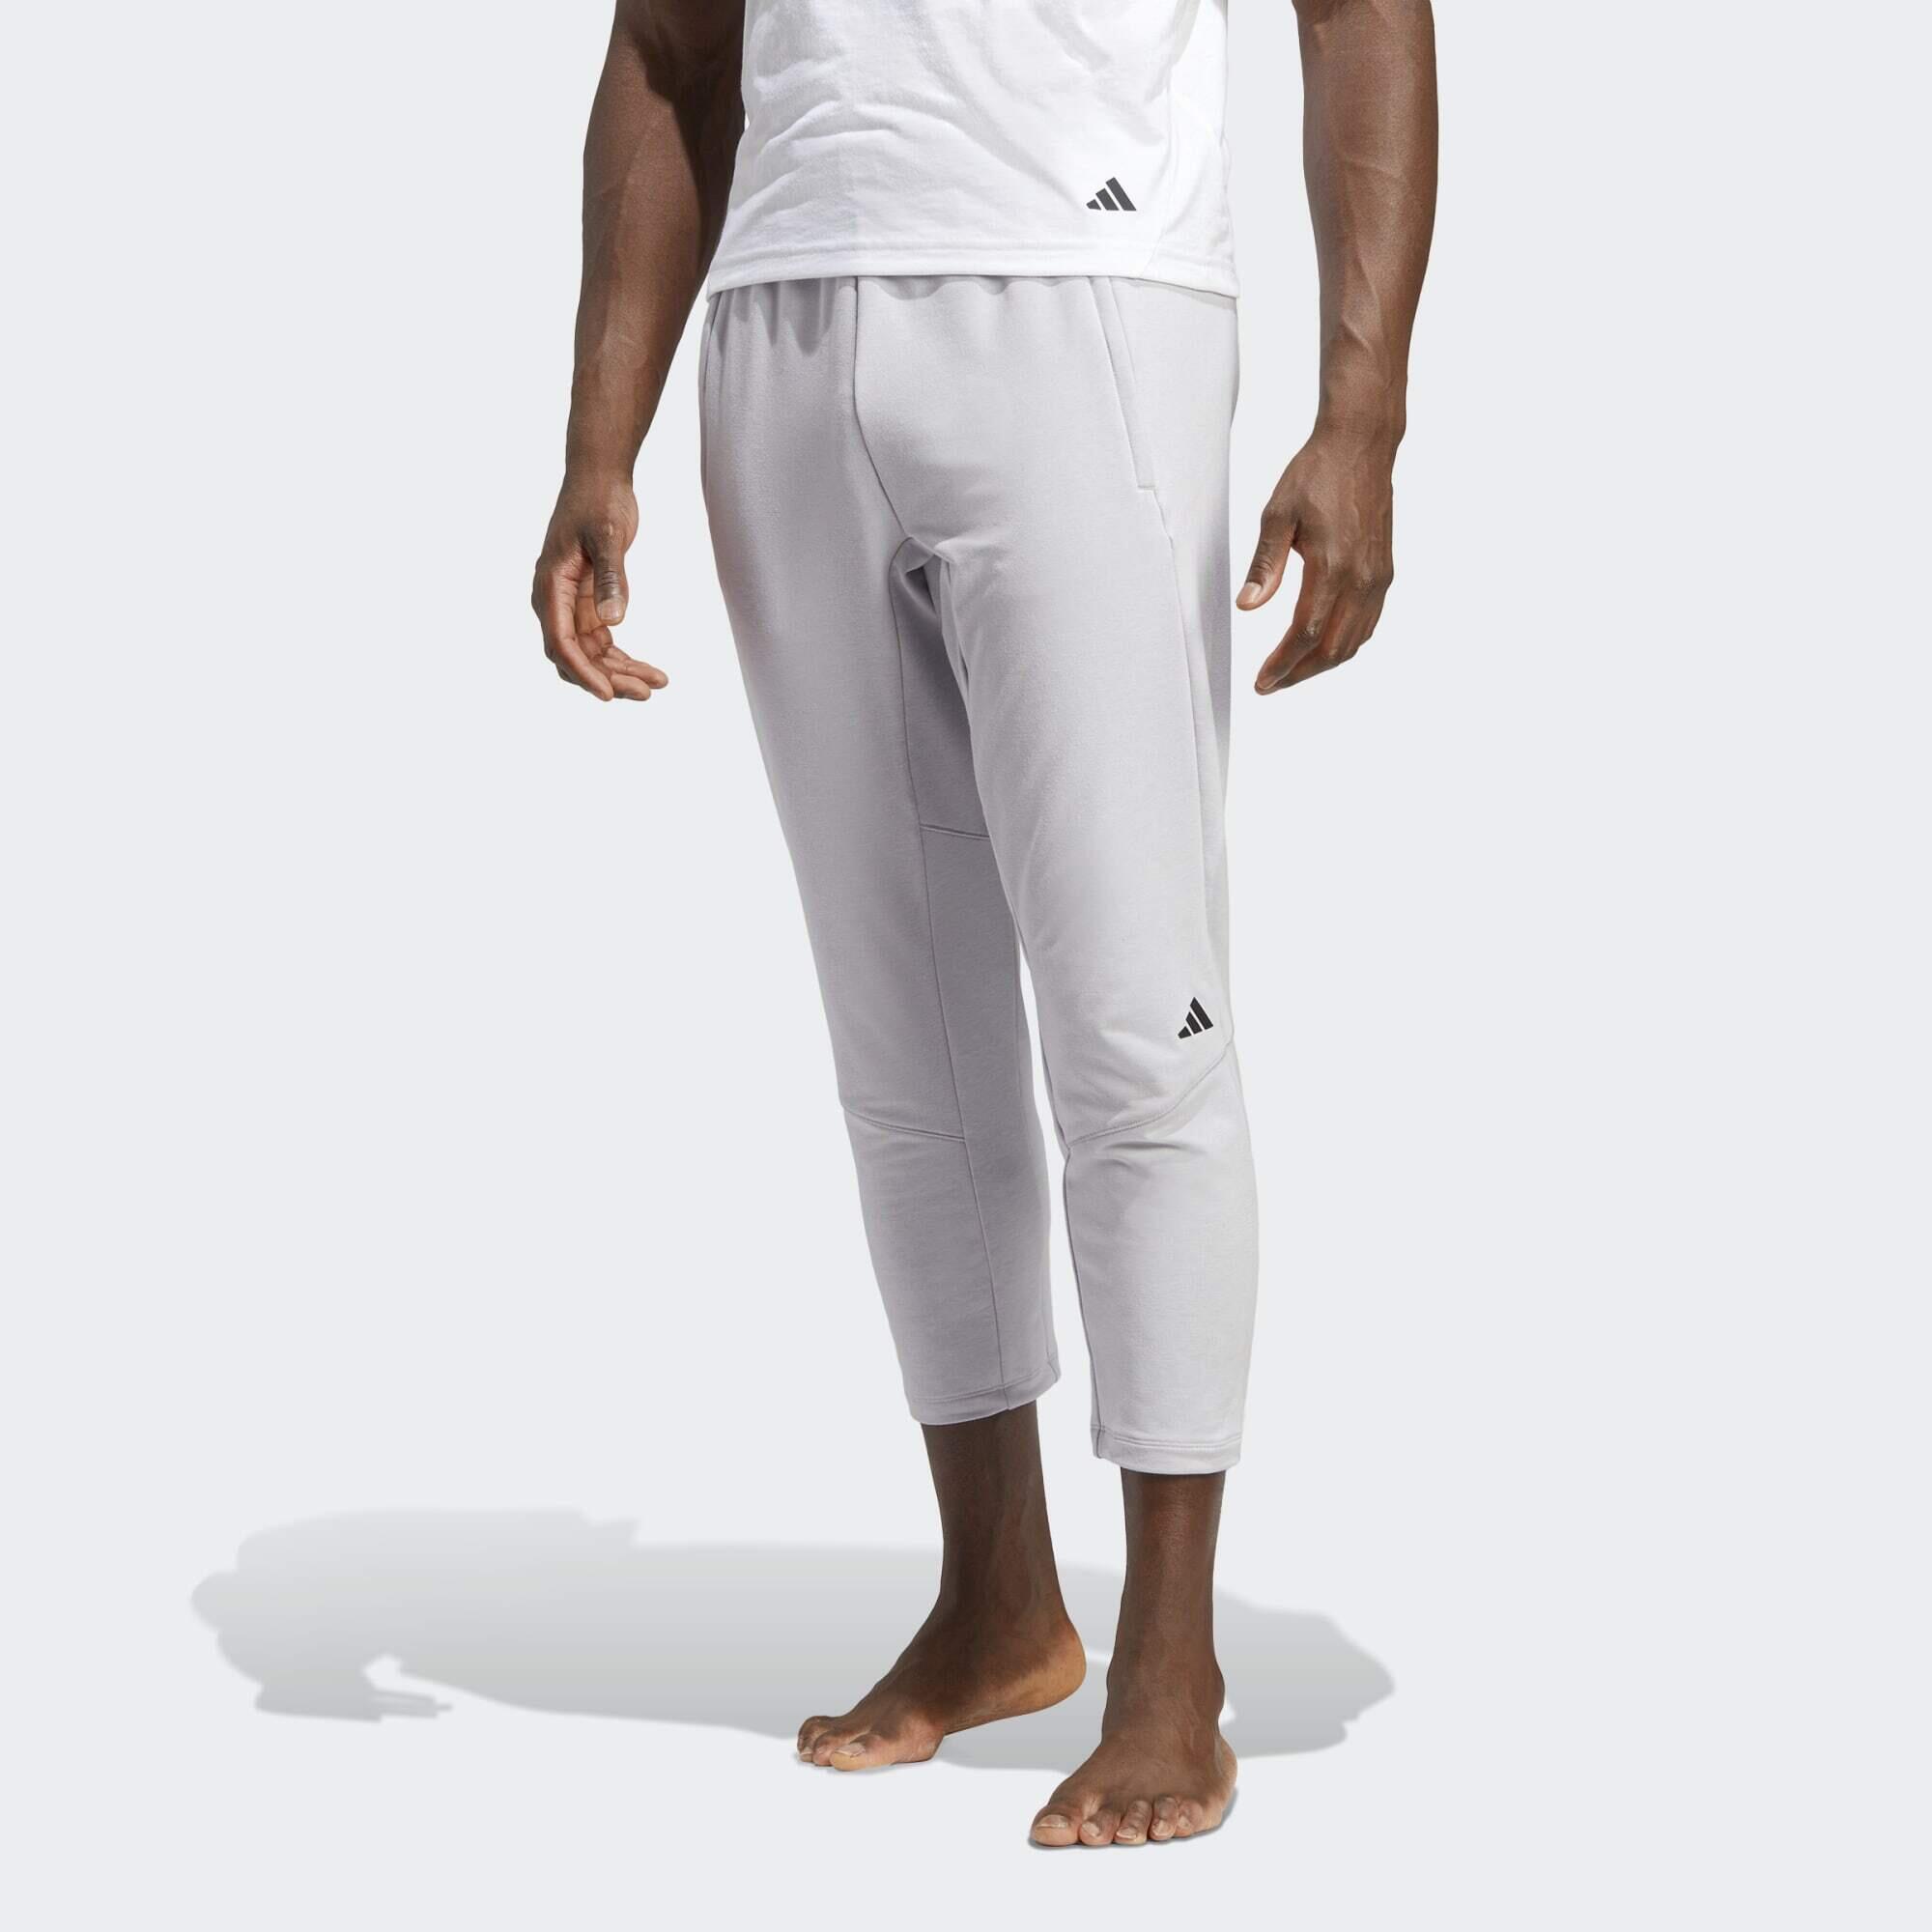 ADIDAS Designed for Training Yoga 7/8 Training Pants